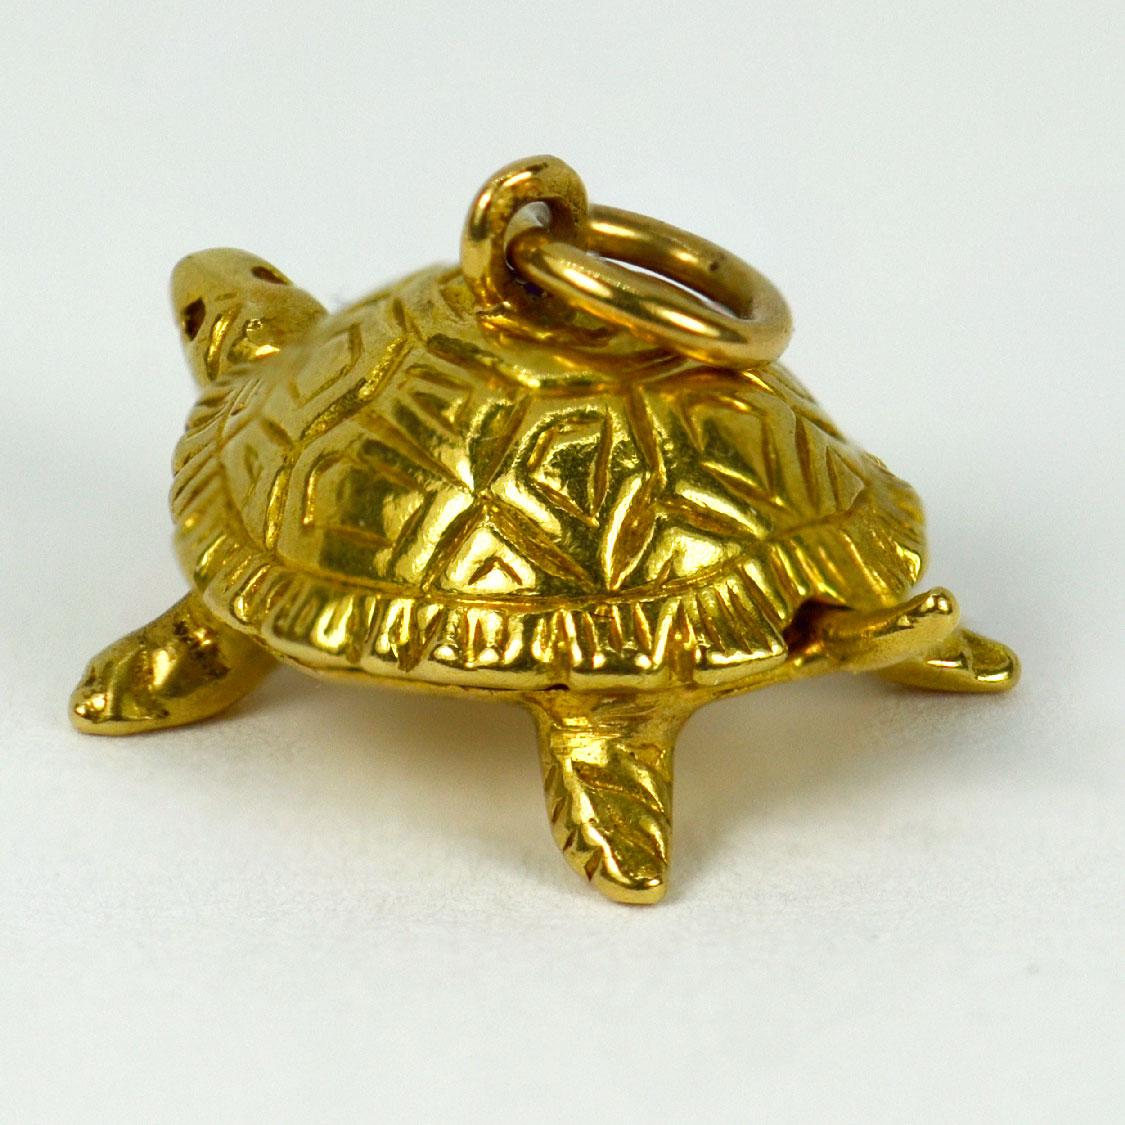 Pendentif à breloques en or jaune 18 carats (18K) représentant une tortue. Estampillé de la marque du hibou pour l'importation française et de l'or 18 carats, ainsi que d'une marque de fabricant inconnue.

Dimensions : 1 x 2 x 1,3 cm (sans anneau de